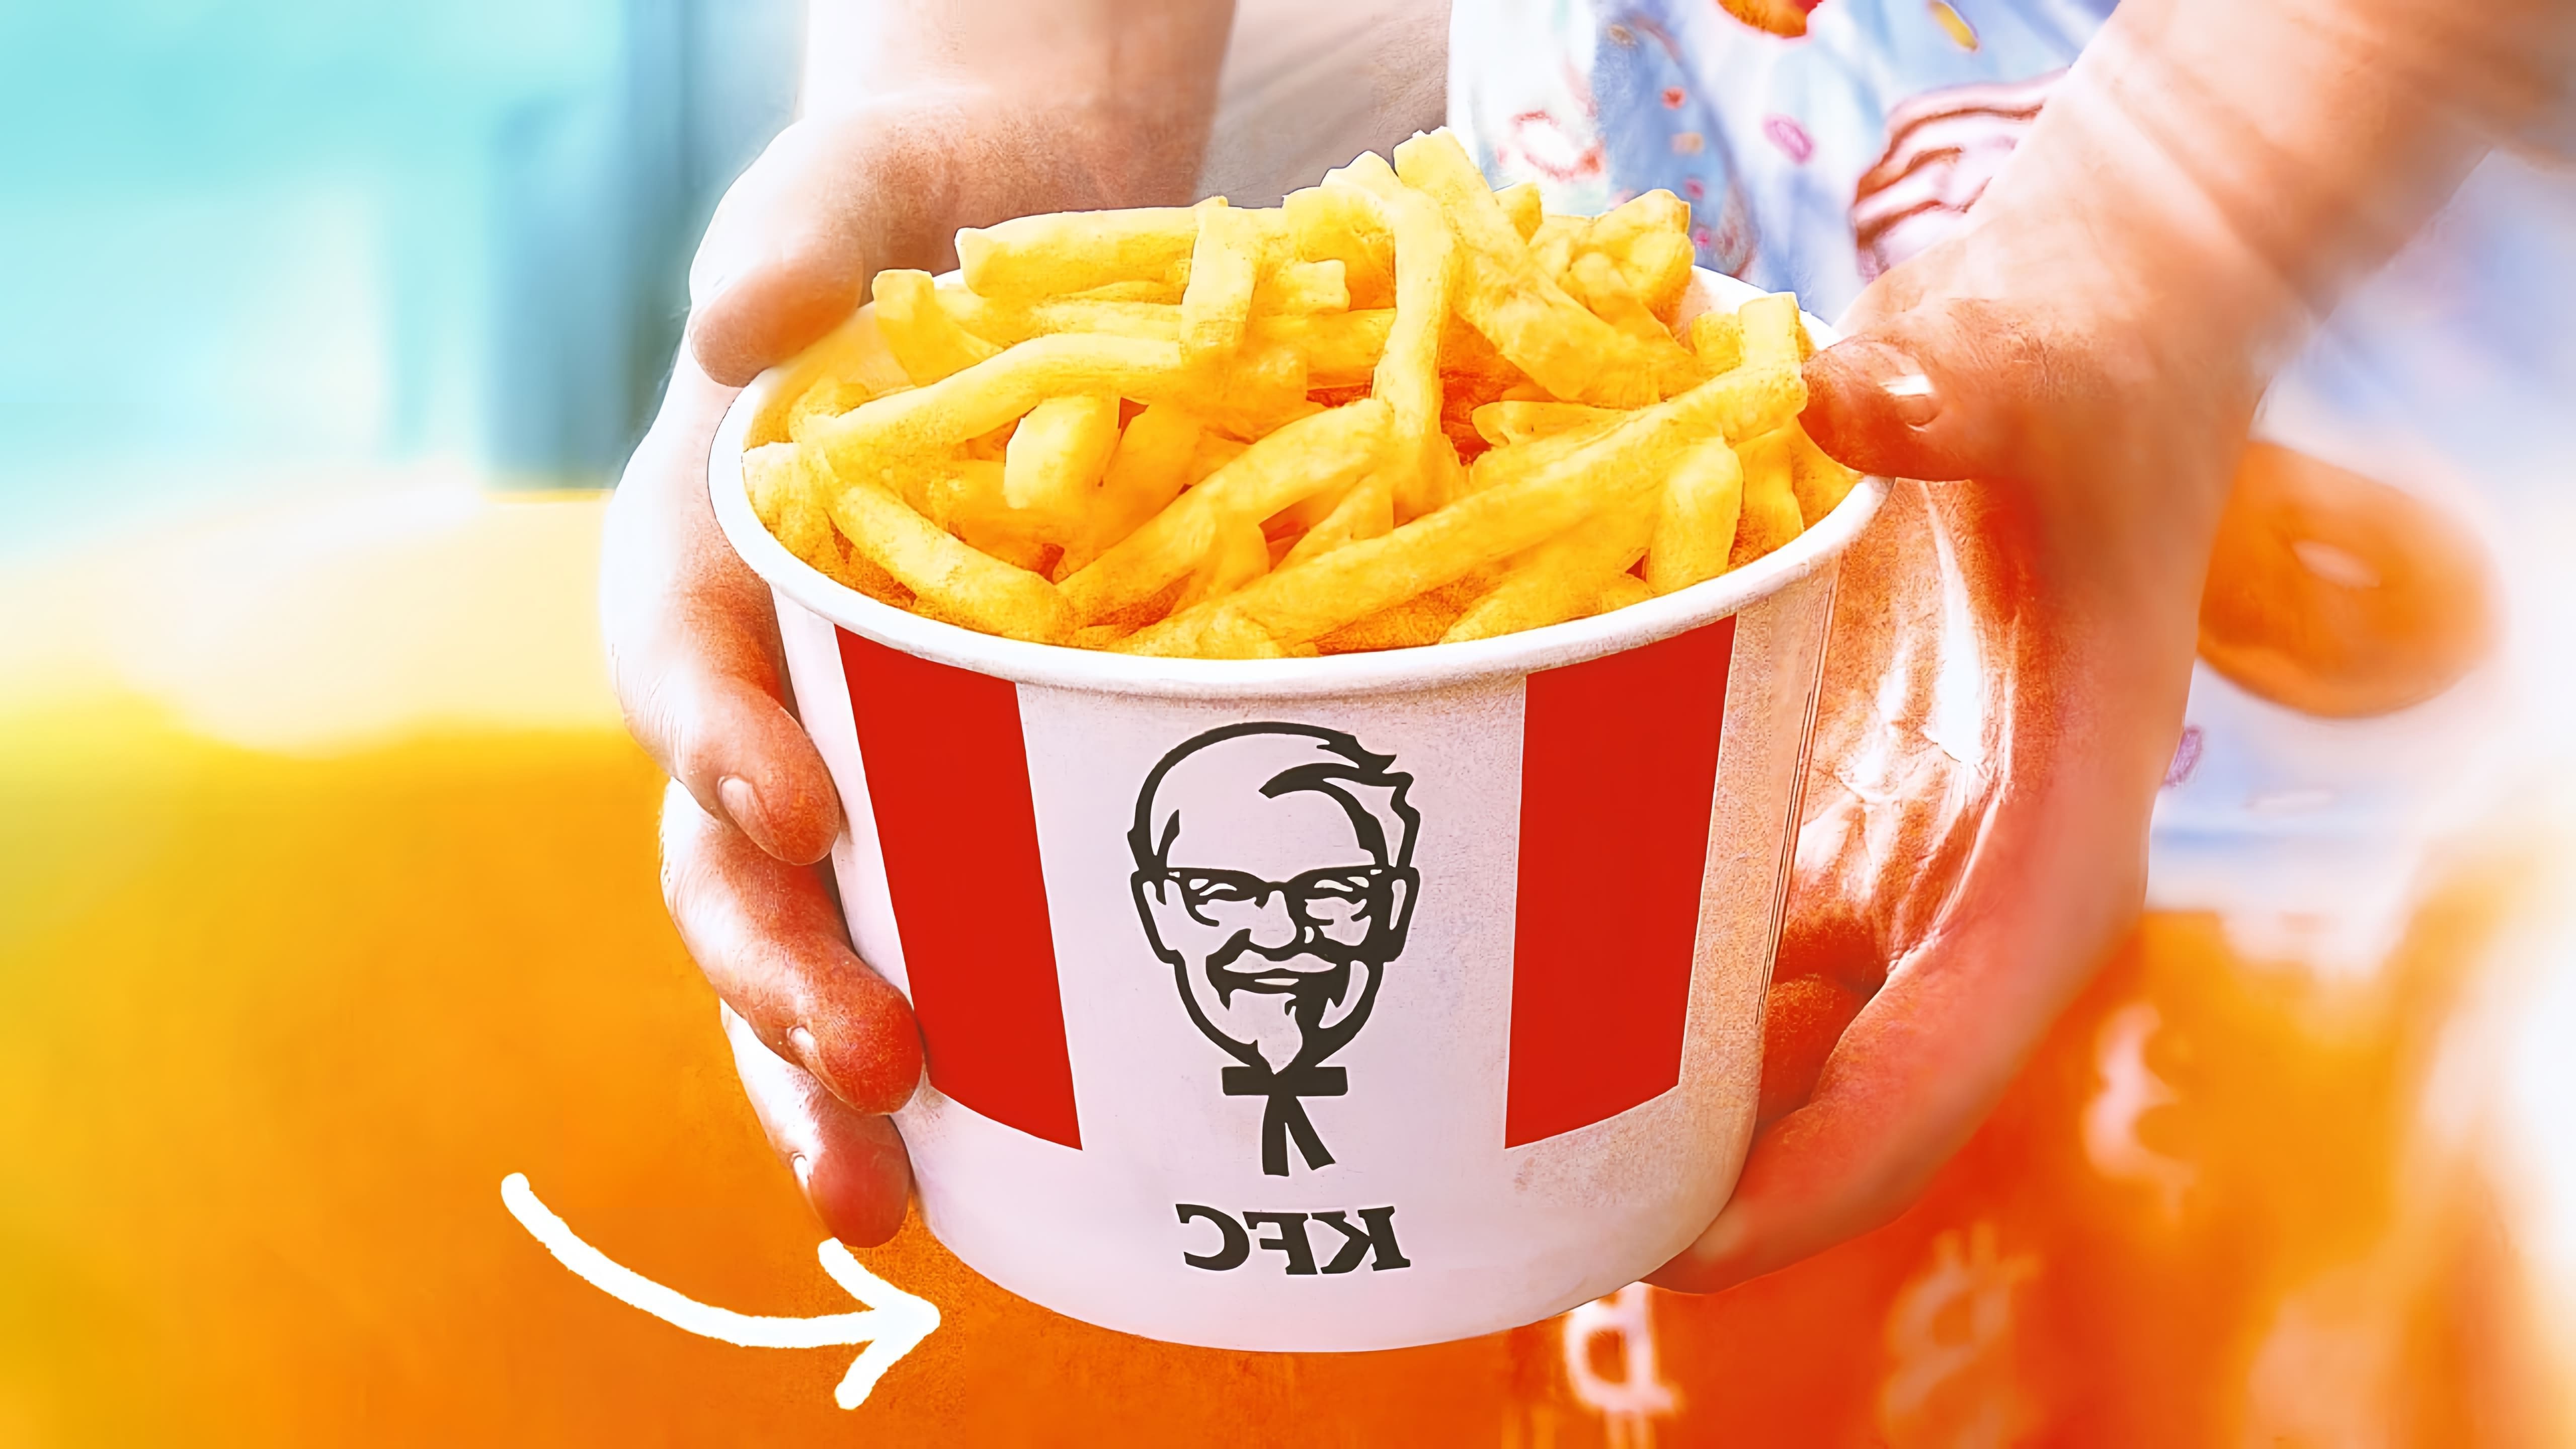 Видео как приготовить домашние картофельные фри, похожие на те, что продают в KFC или McDonald's